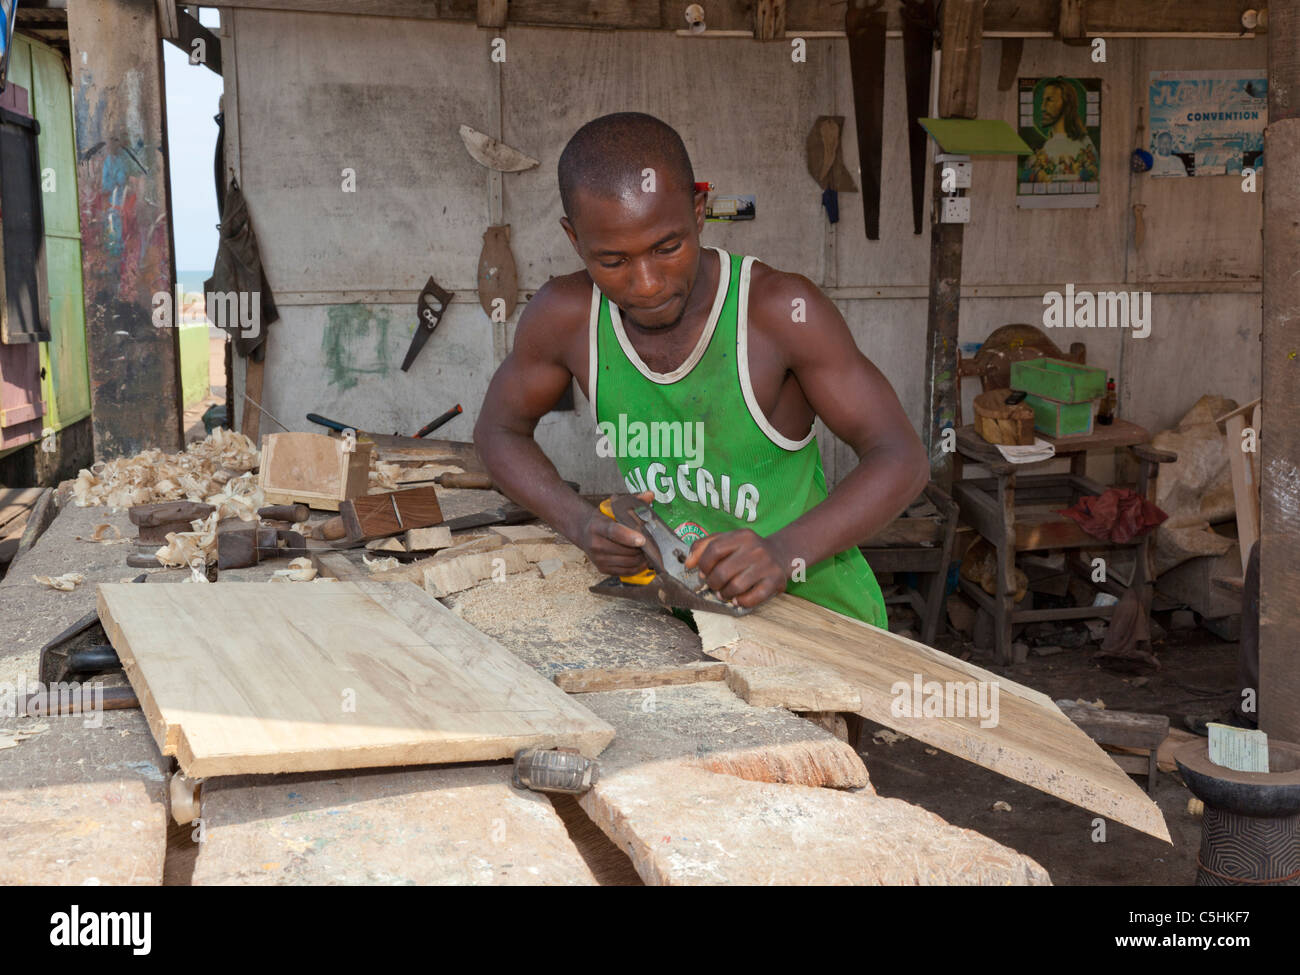 Un charpentier de la planification d'une pièce de bois pour construire un cercueil. Accra, Ghana Banque D'Images